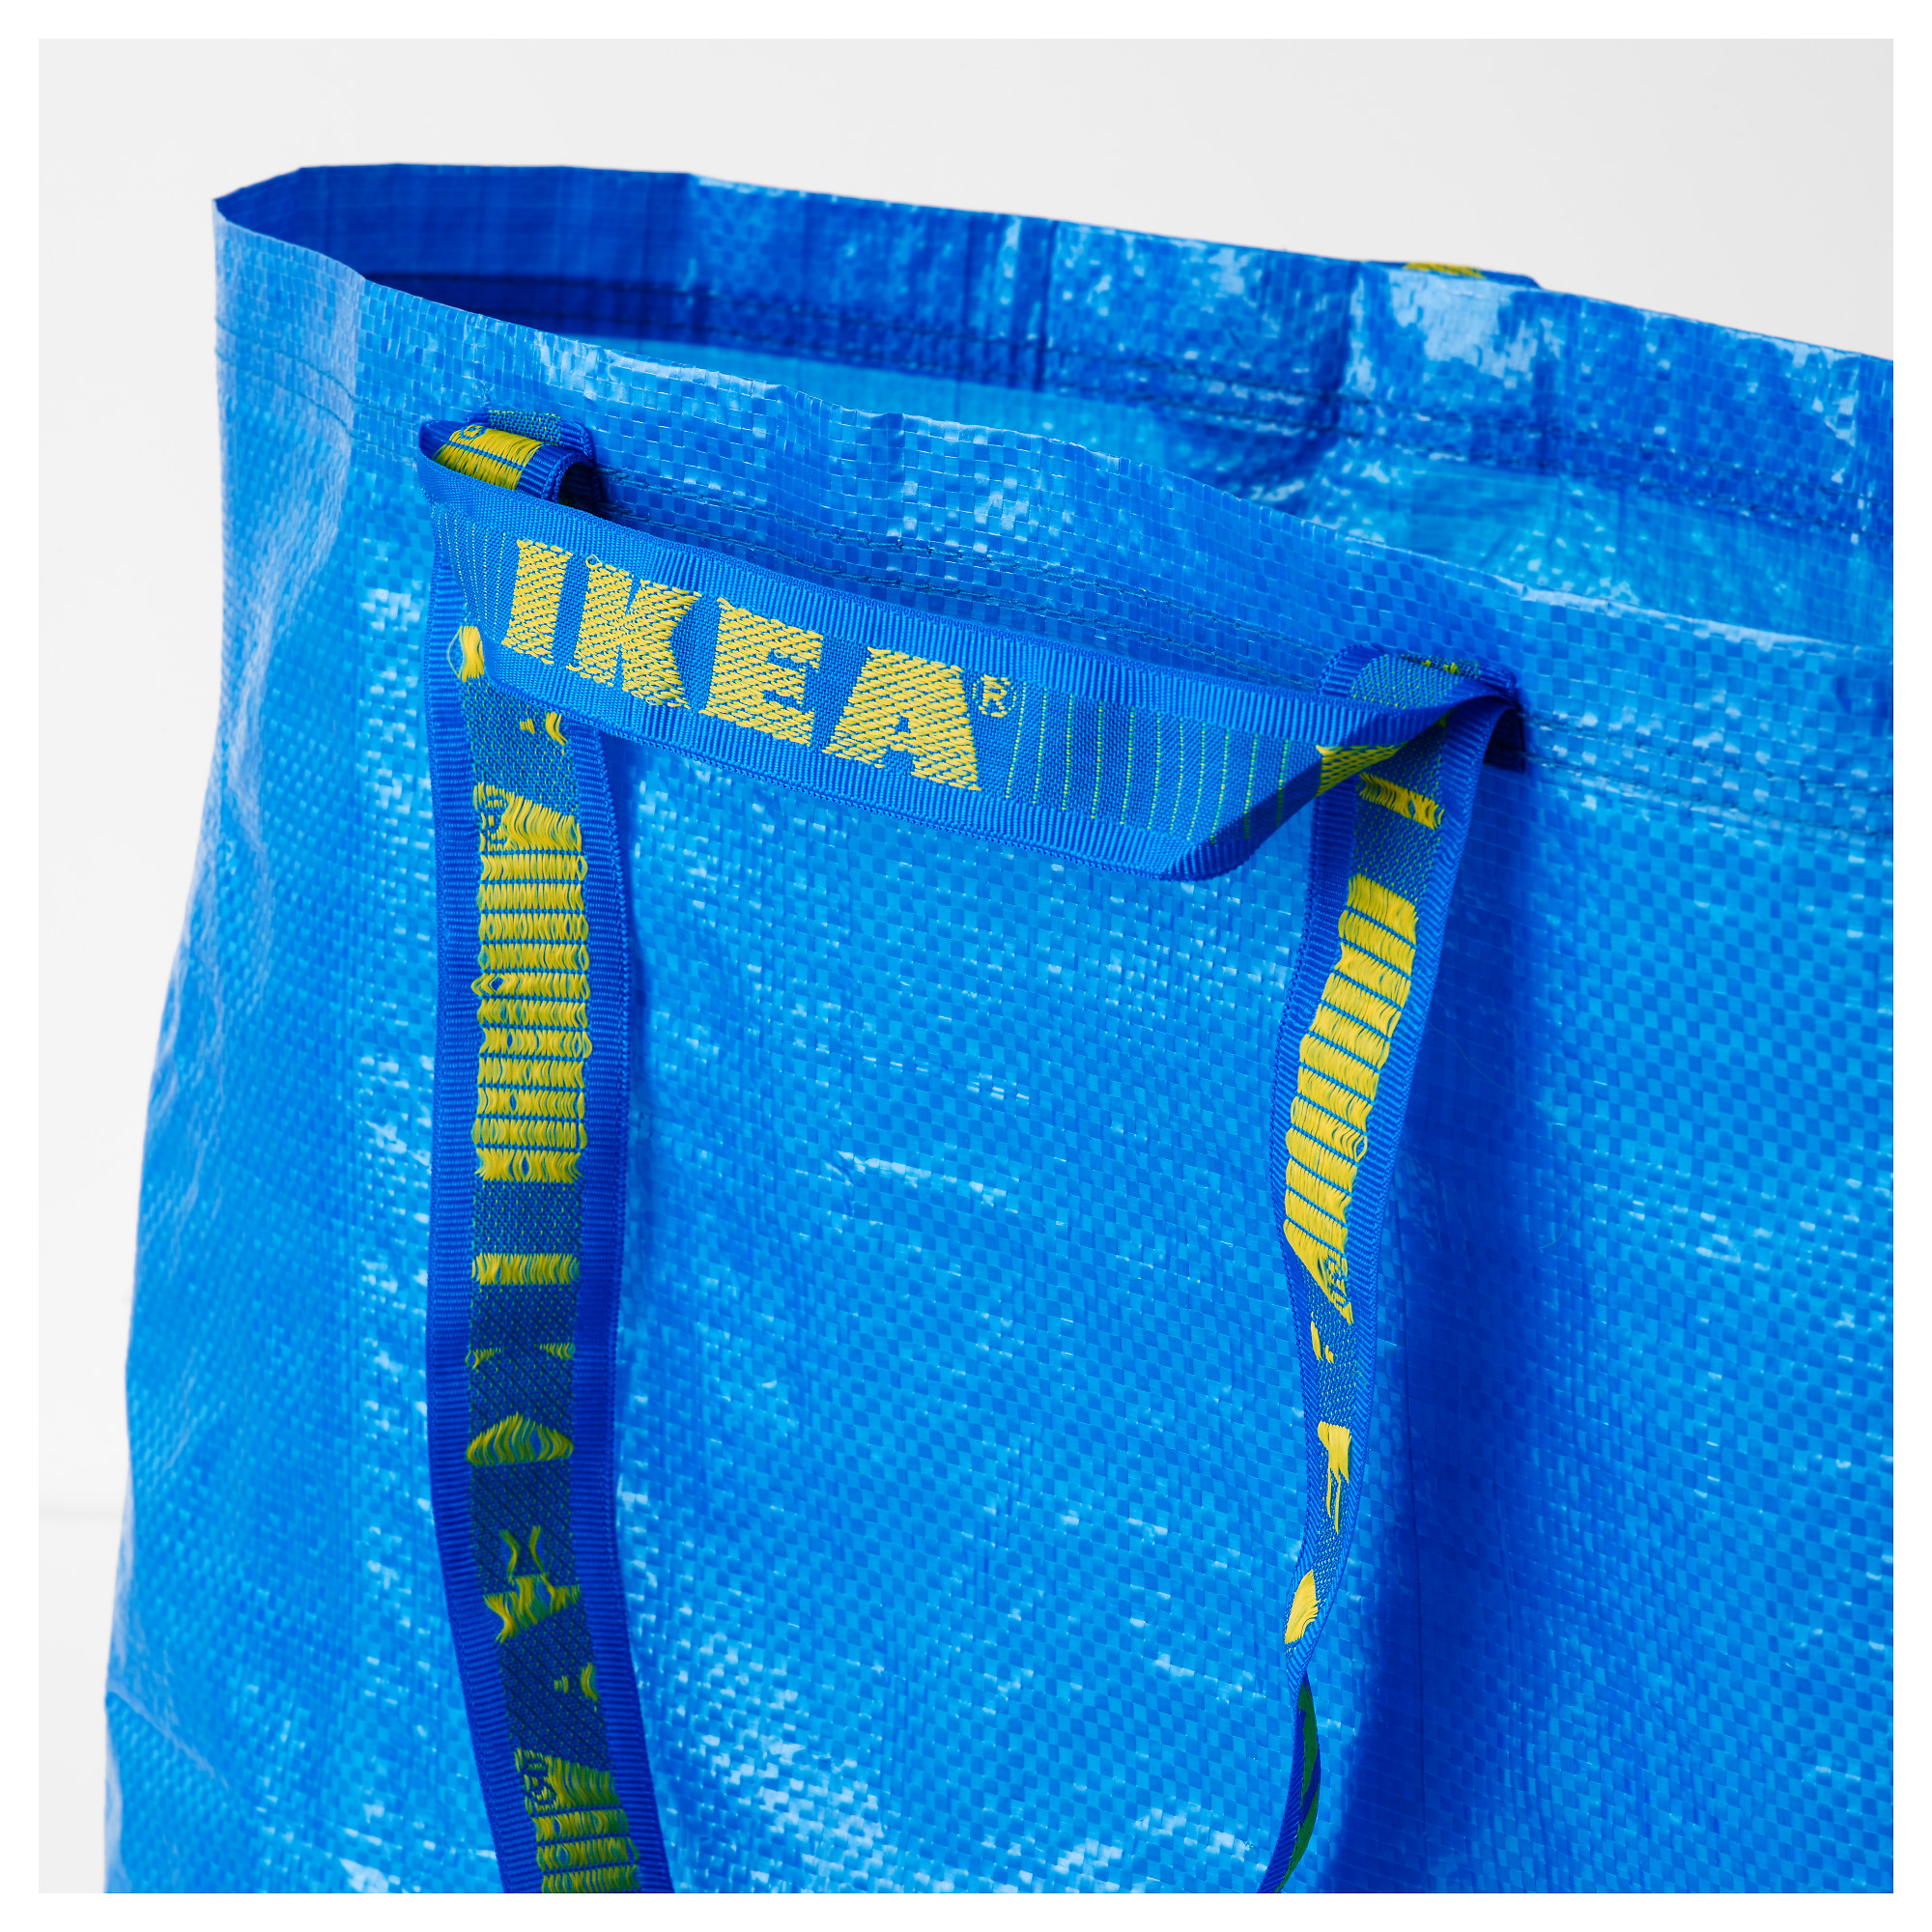 FRAKTA carrier bag, medium